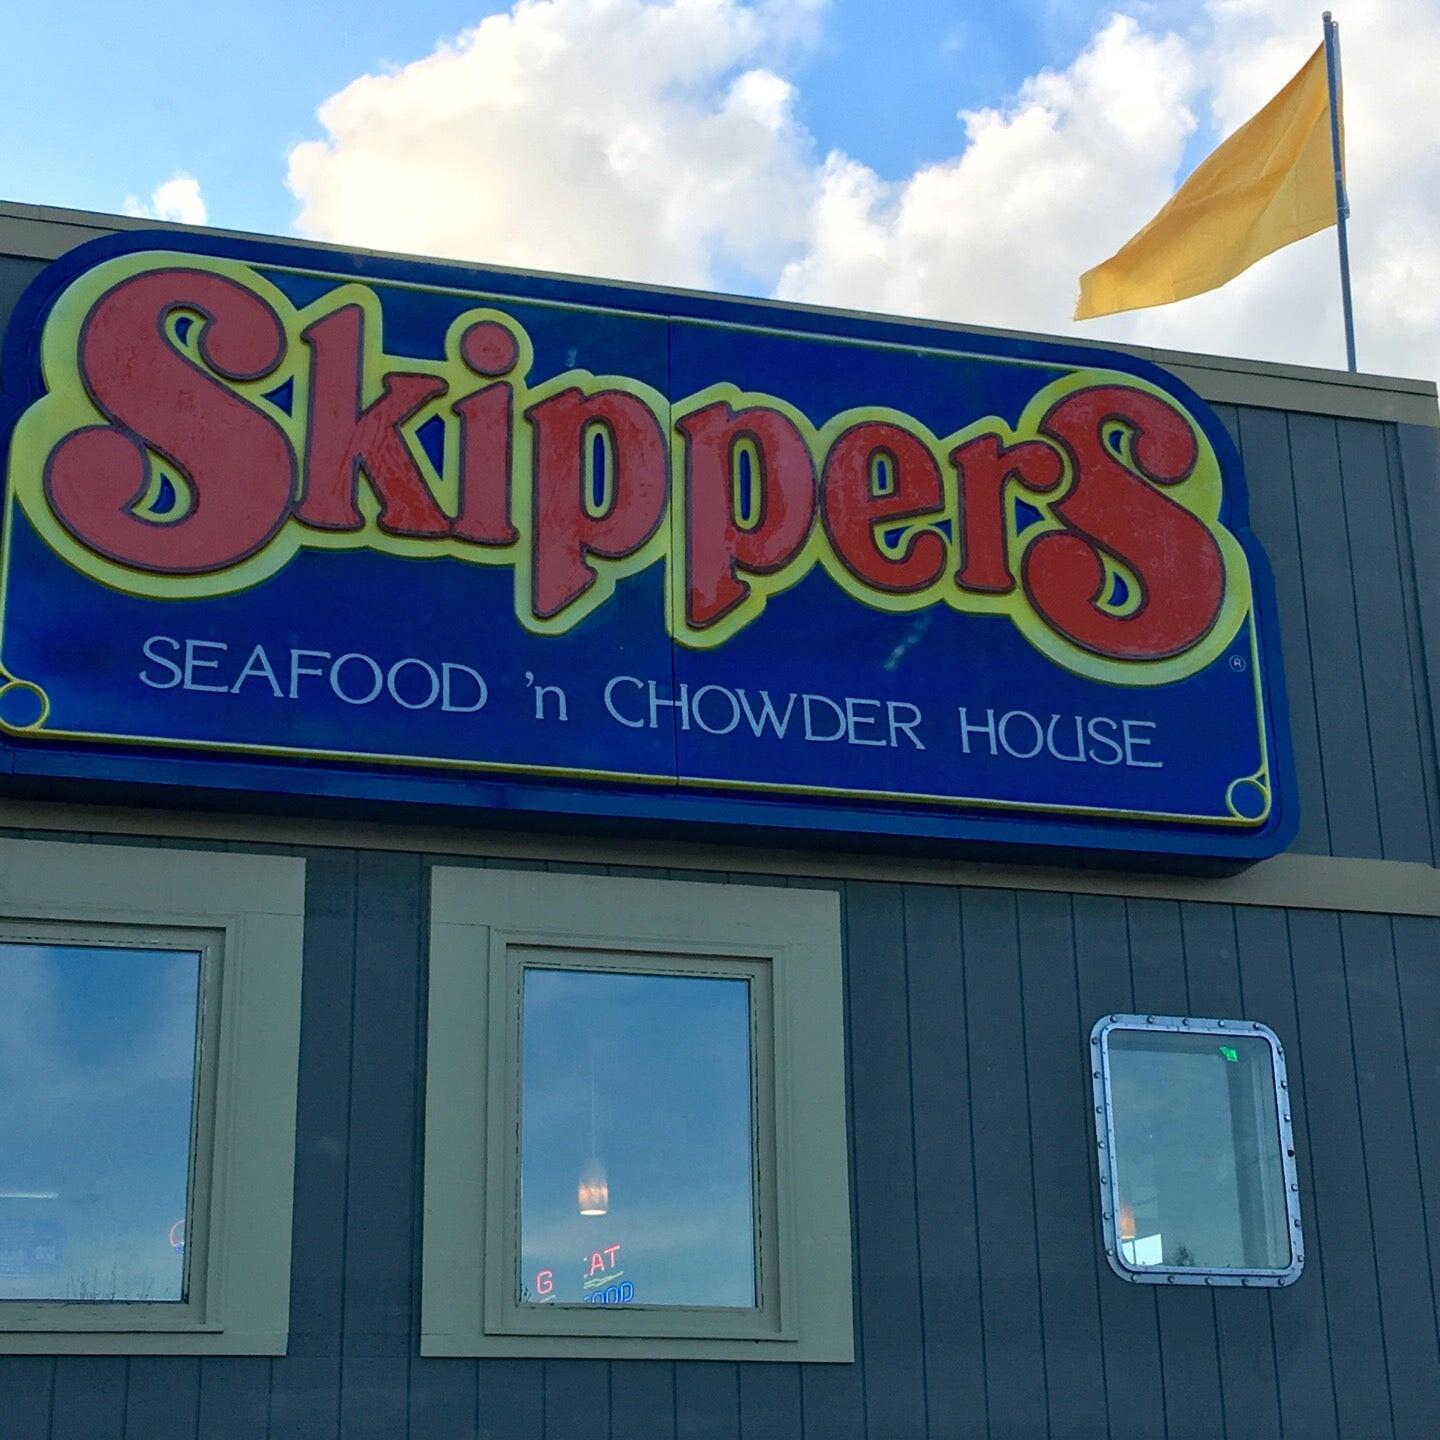 Skippers Seafood & Chowder